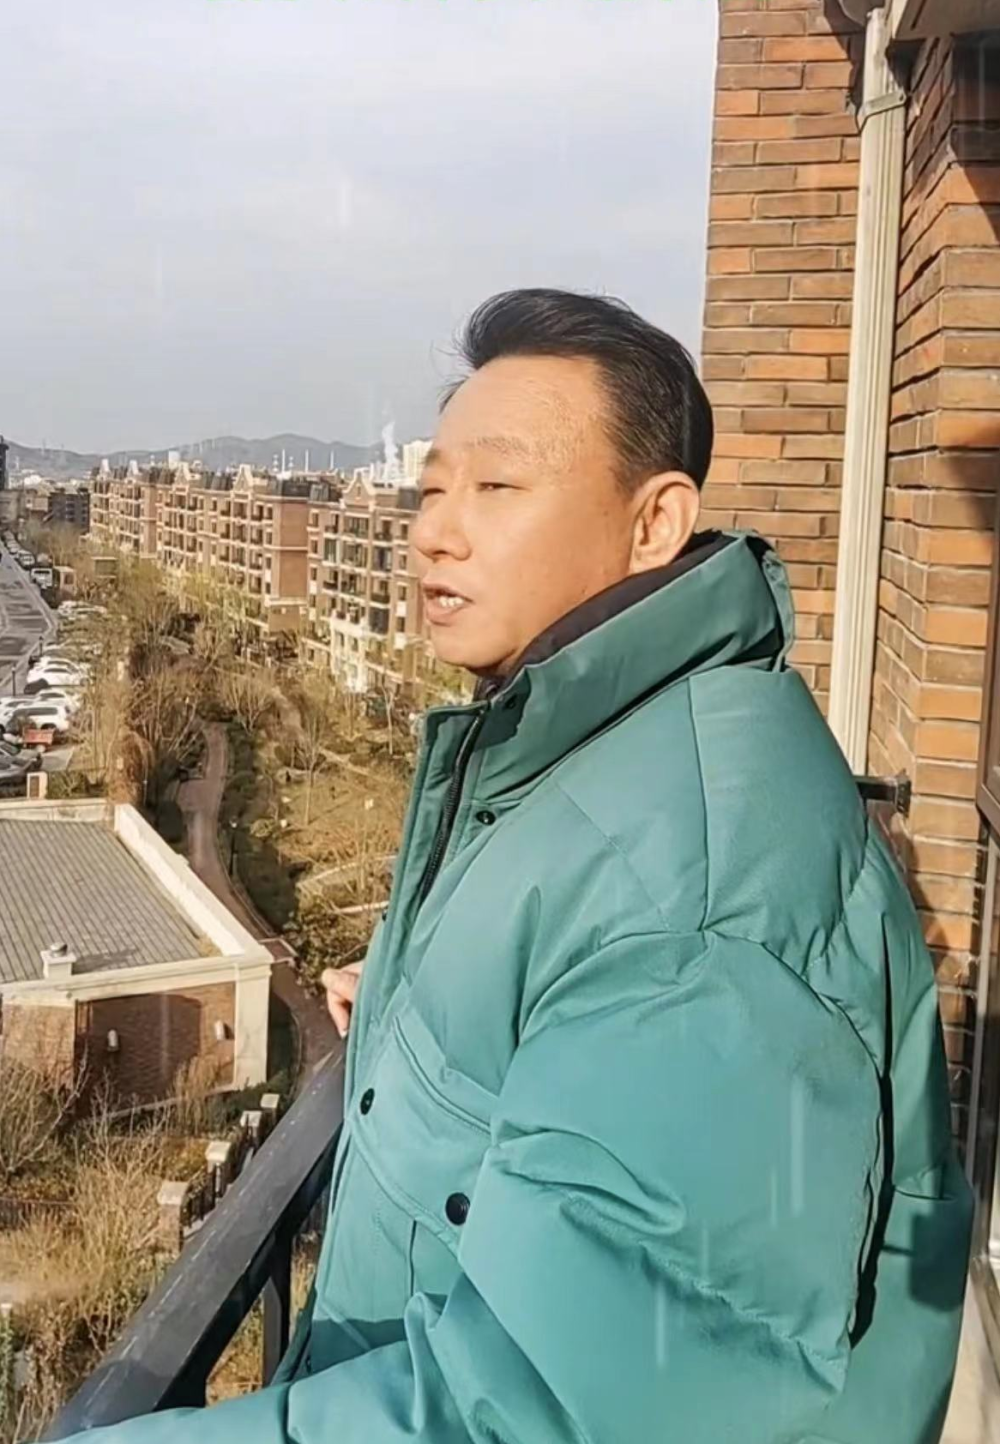 54岁演员邵峰现身显失意,站北京家露天阳台高歌,白发多发福难认